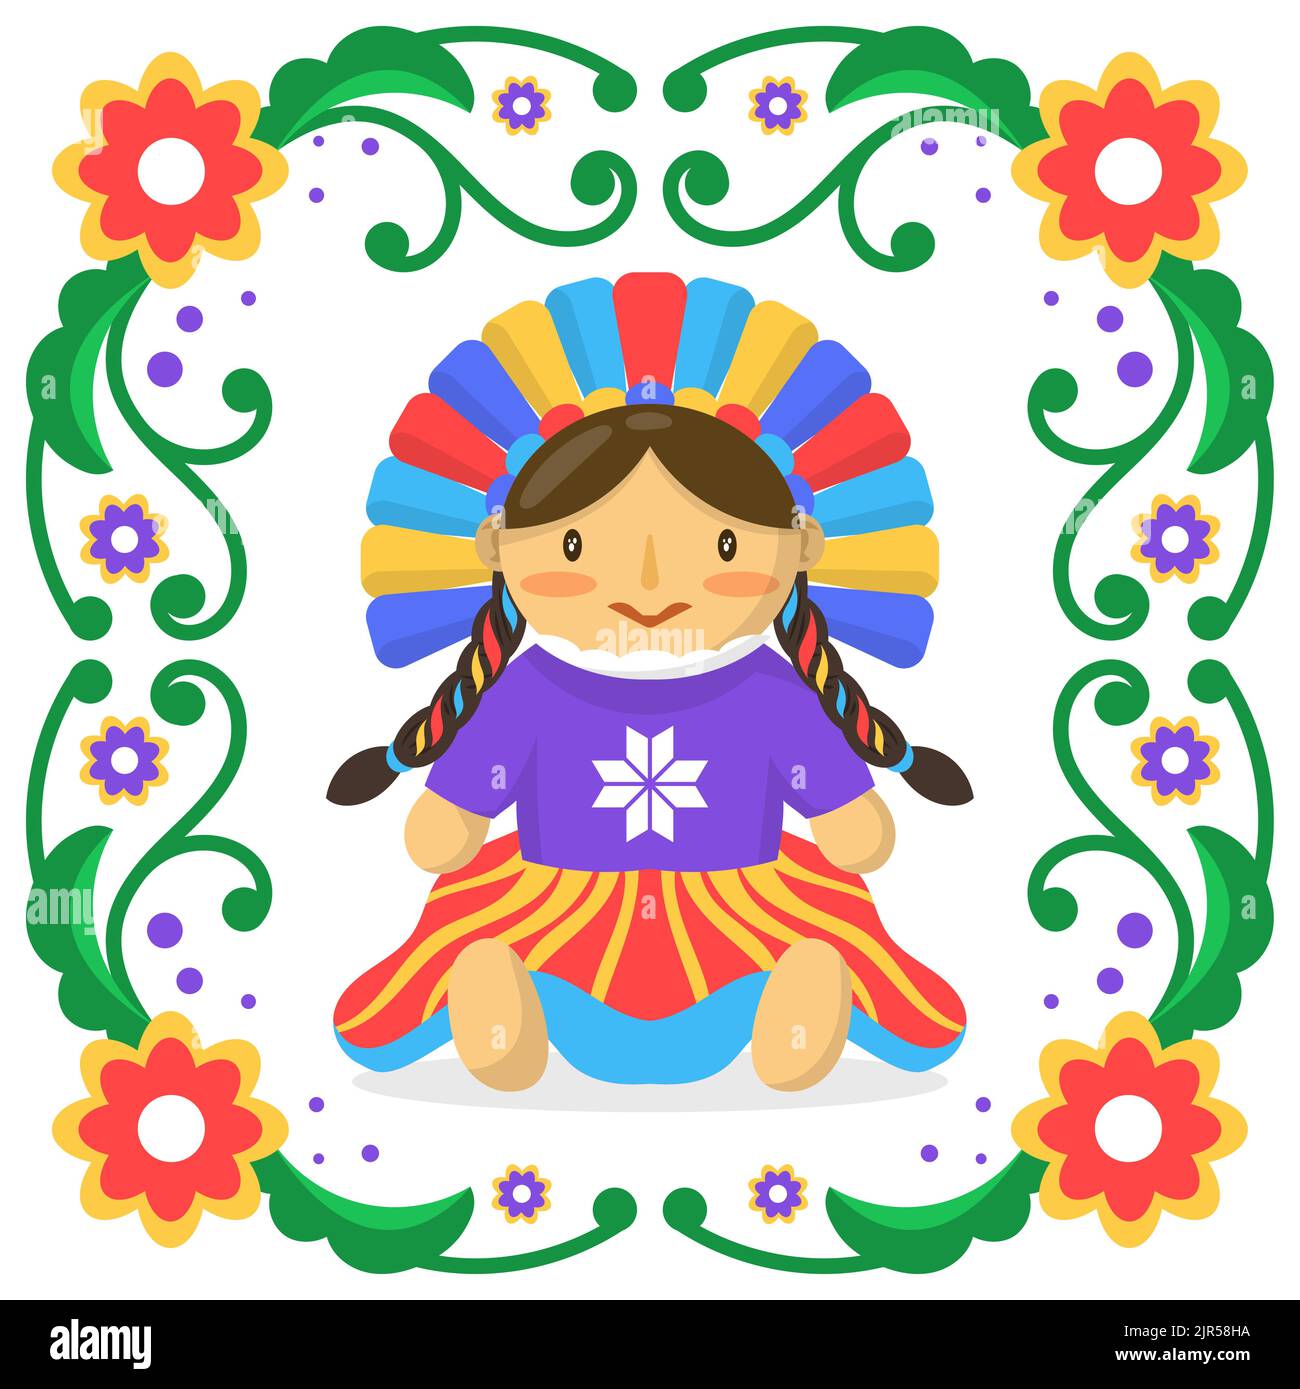 Illustration magnifique de poupée mexicaine illustration vectorielle Illustration de Vecteur